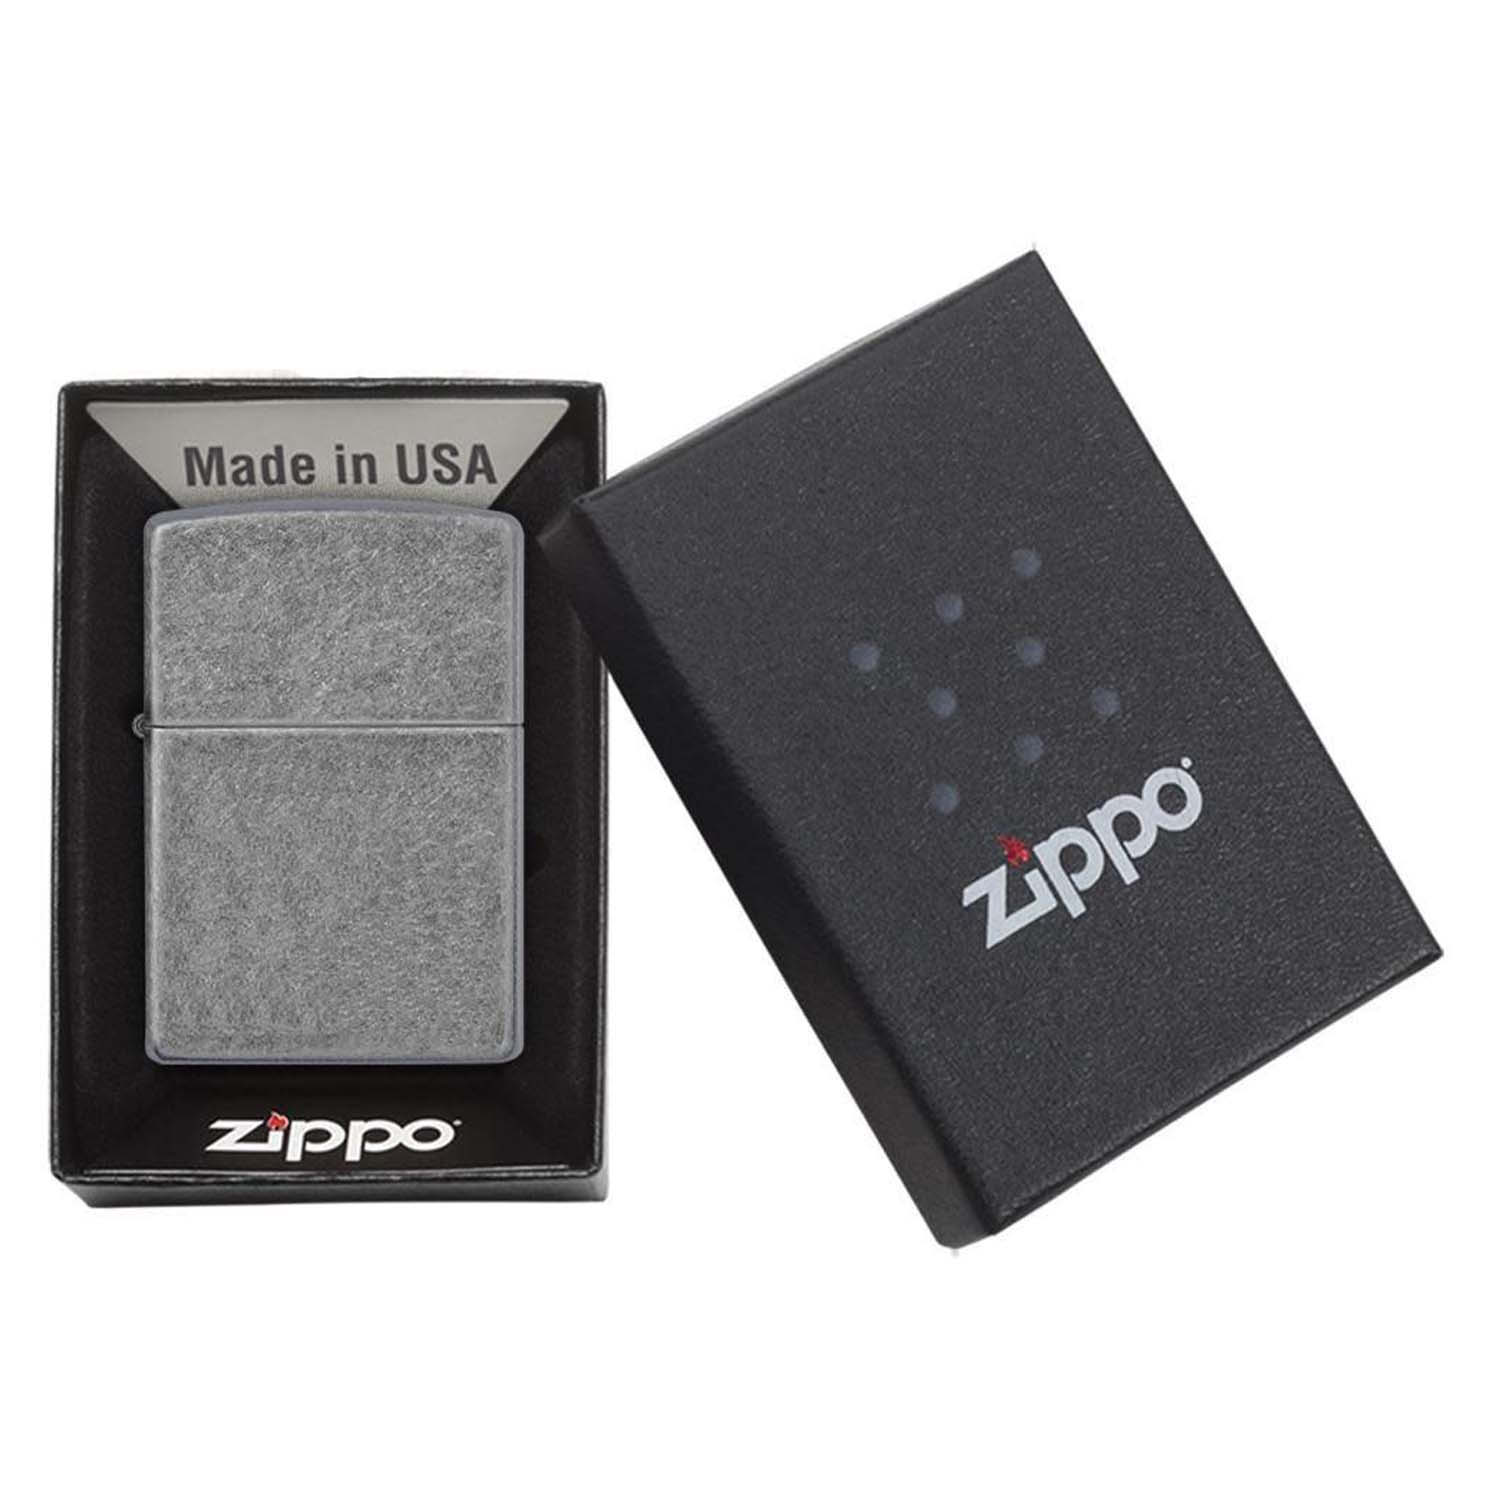 Зажигалка Zippo Plate Серебристый